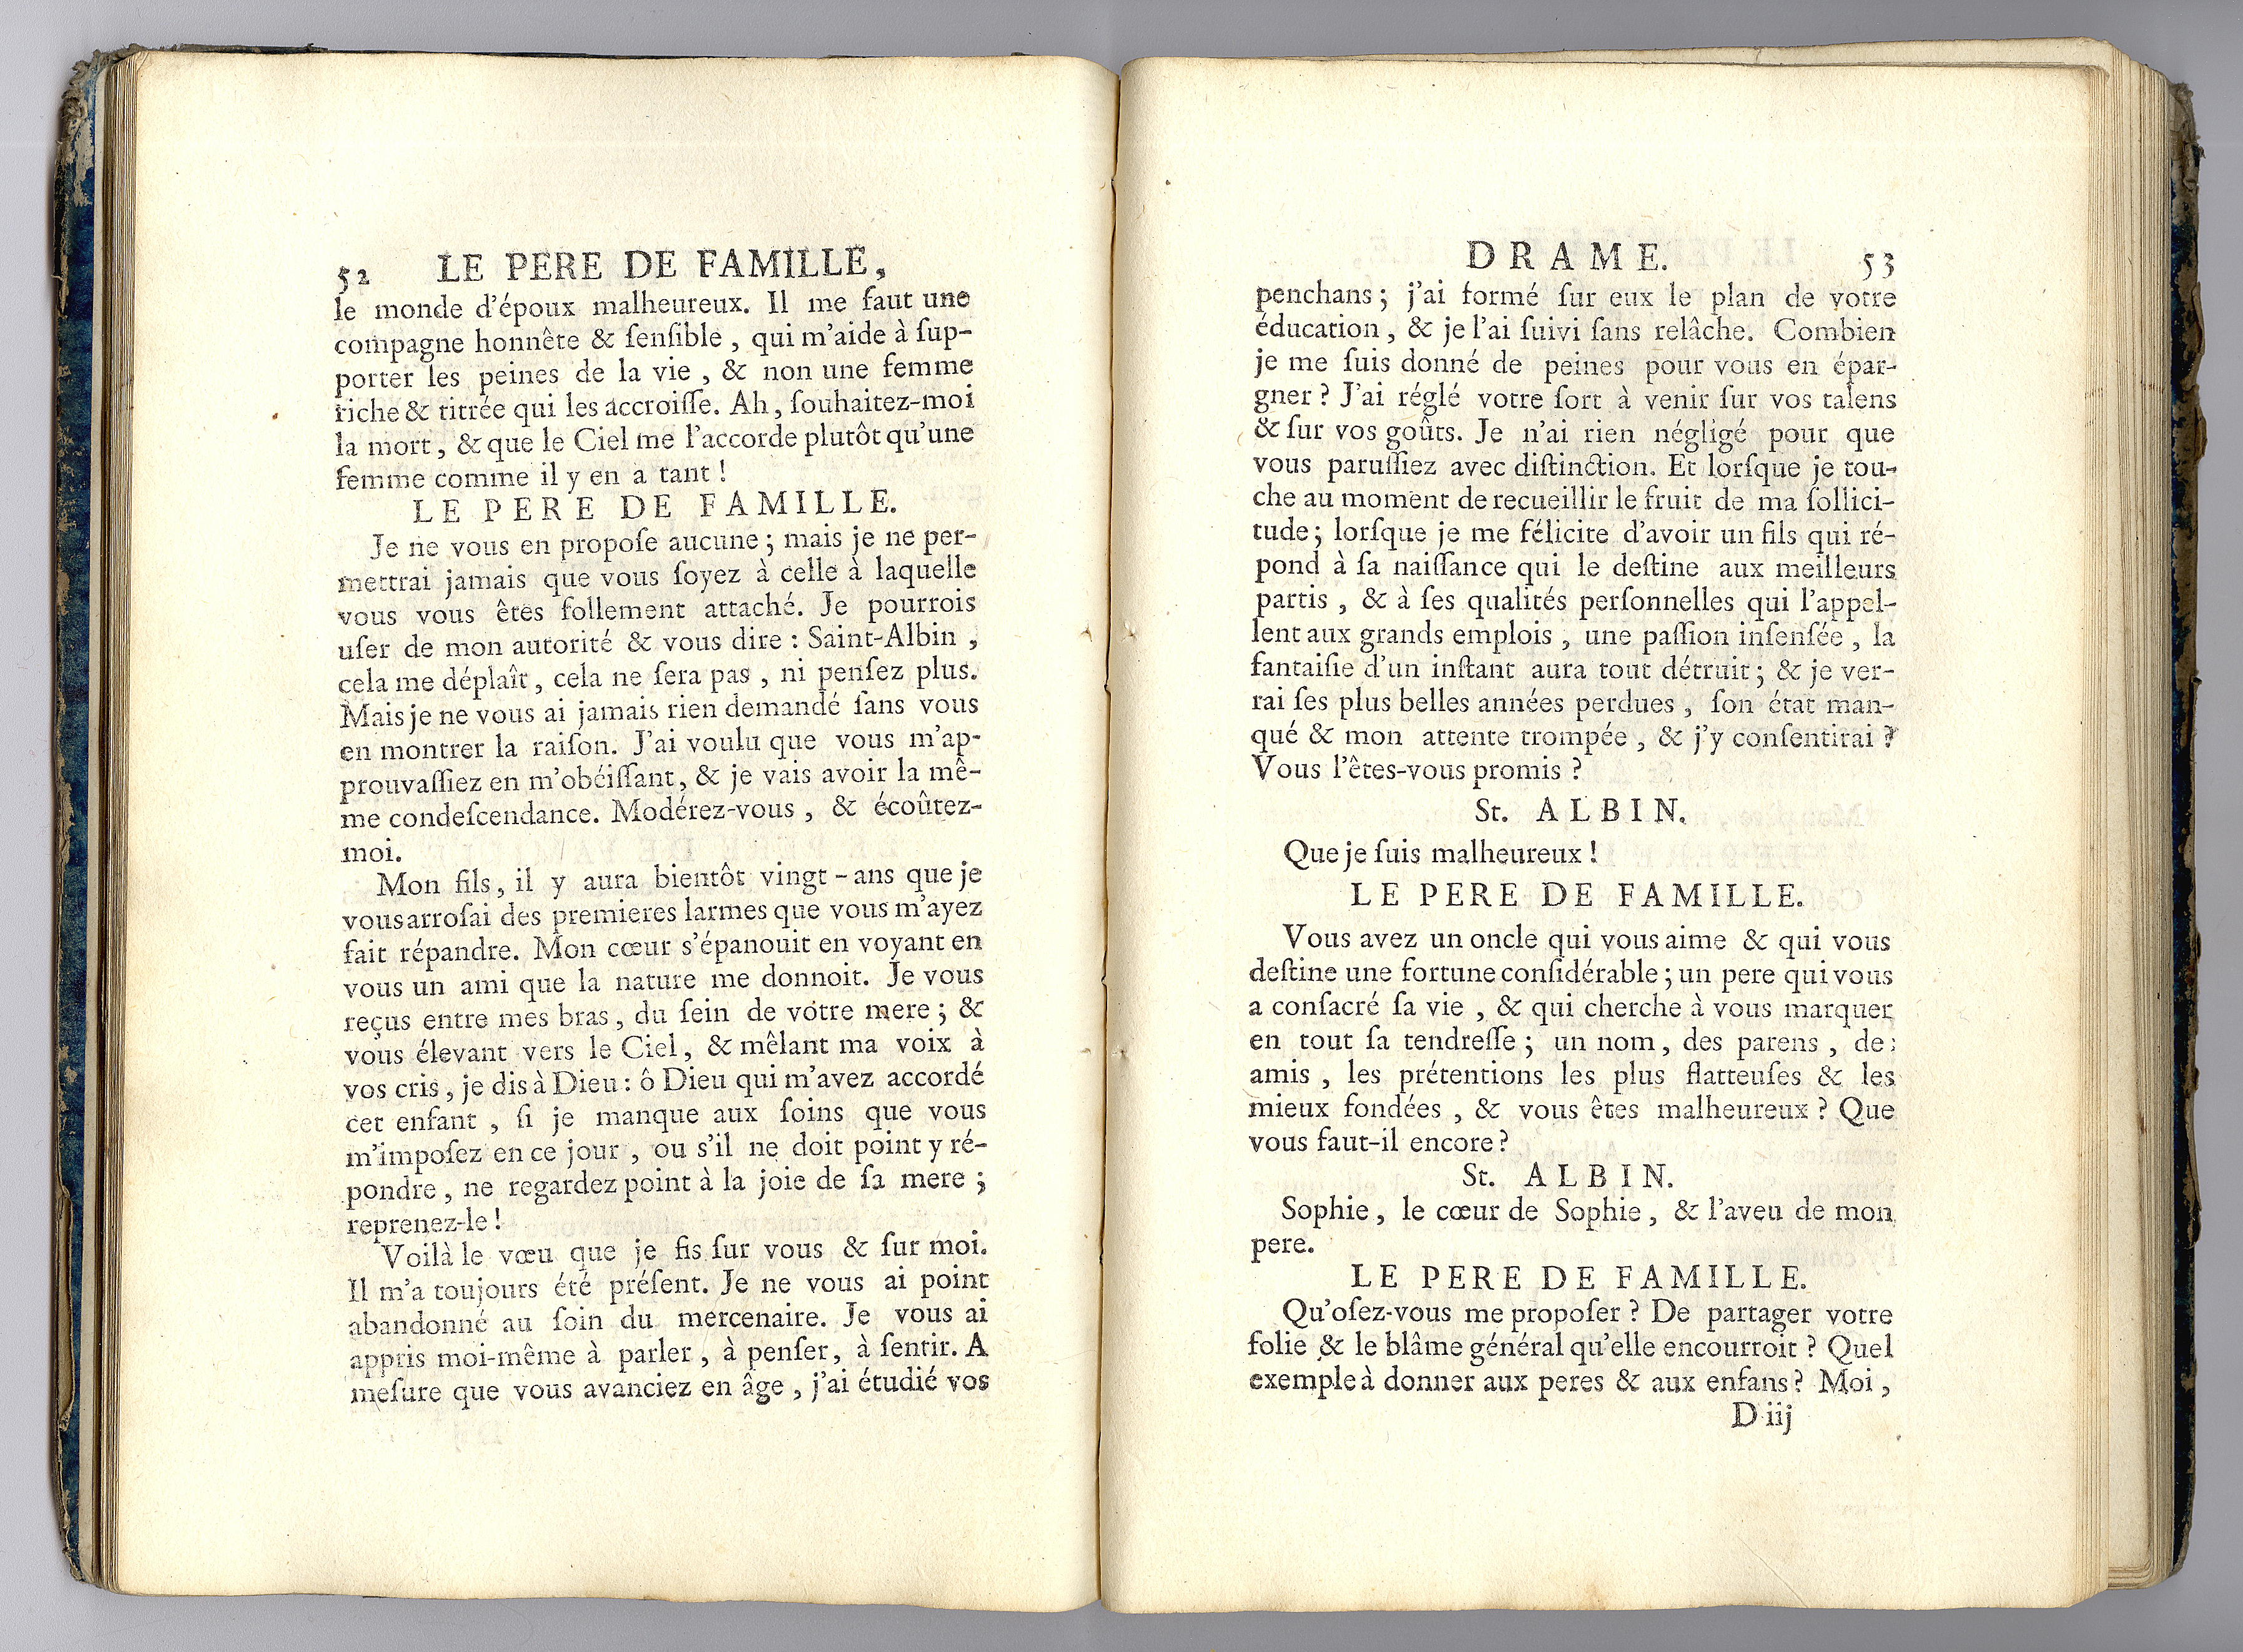 02-pere-de-famille-edition-1772-p.52-53